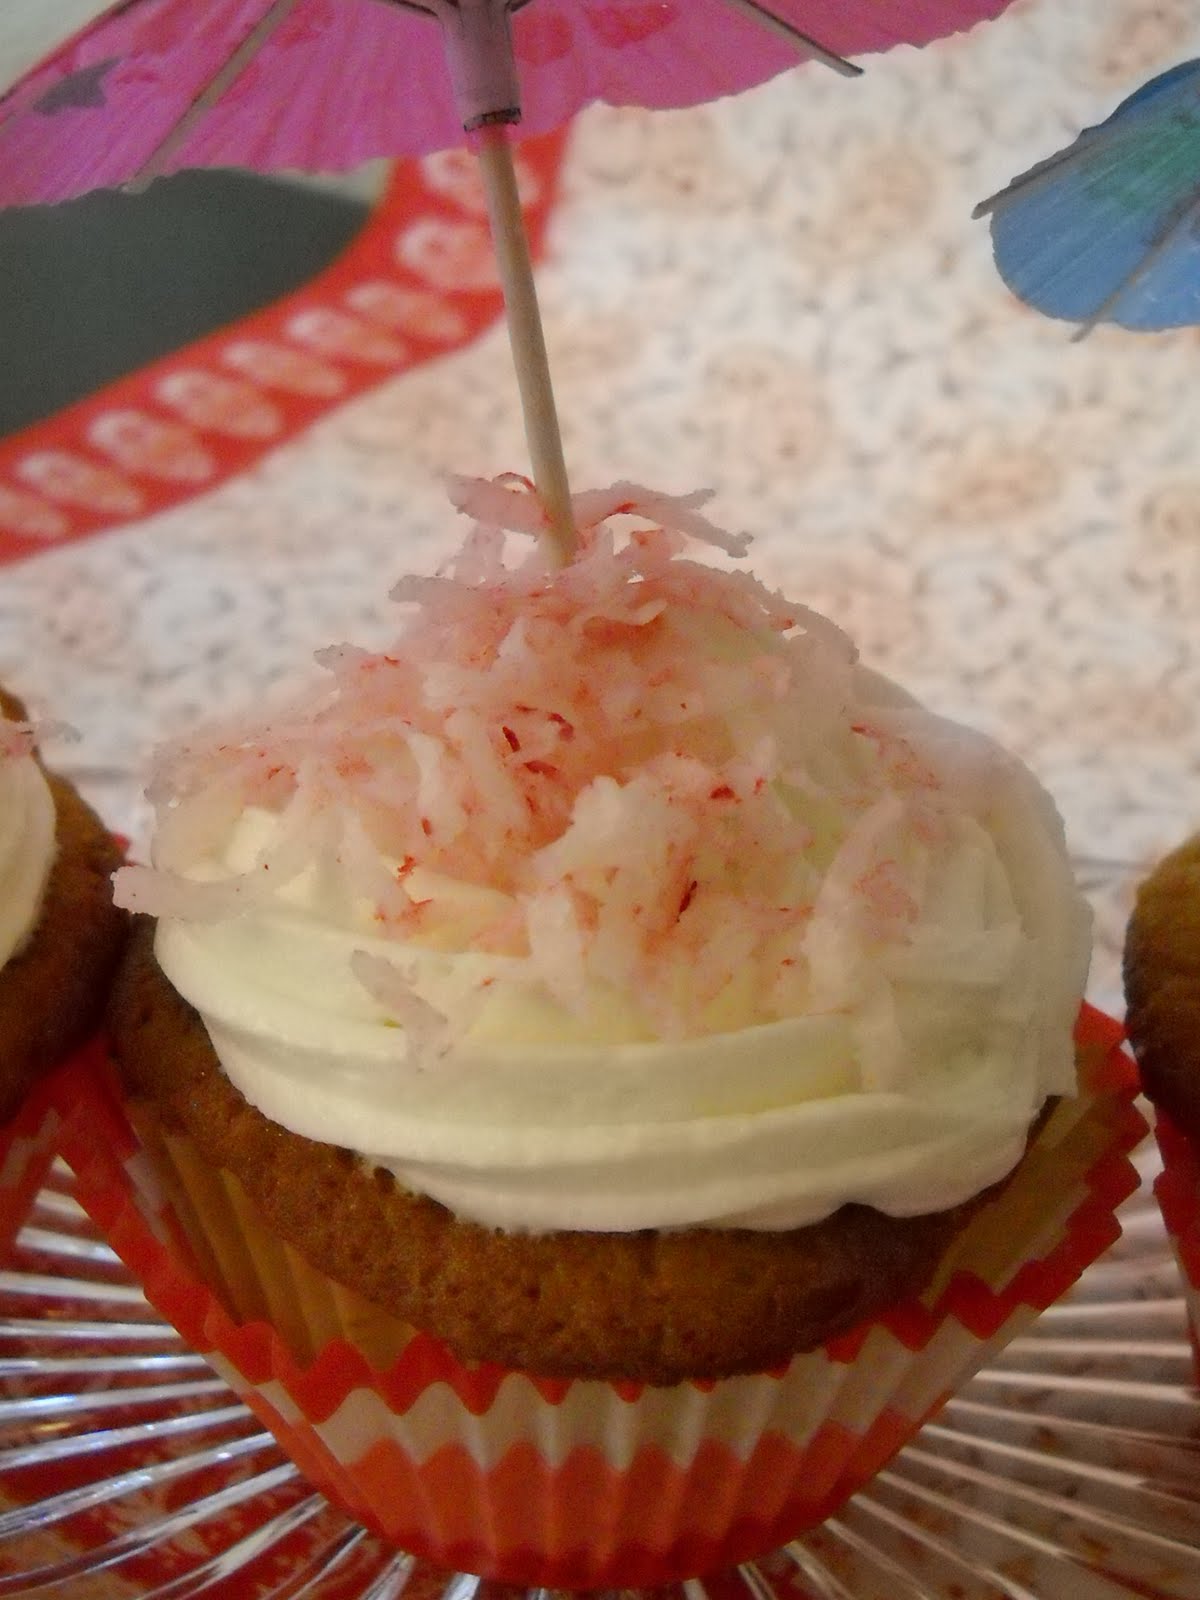 Bake It With Booze!: Piña Colada Cupcakes